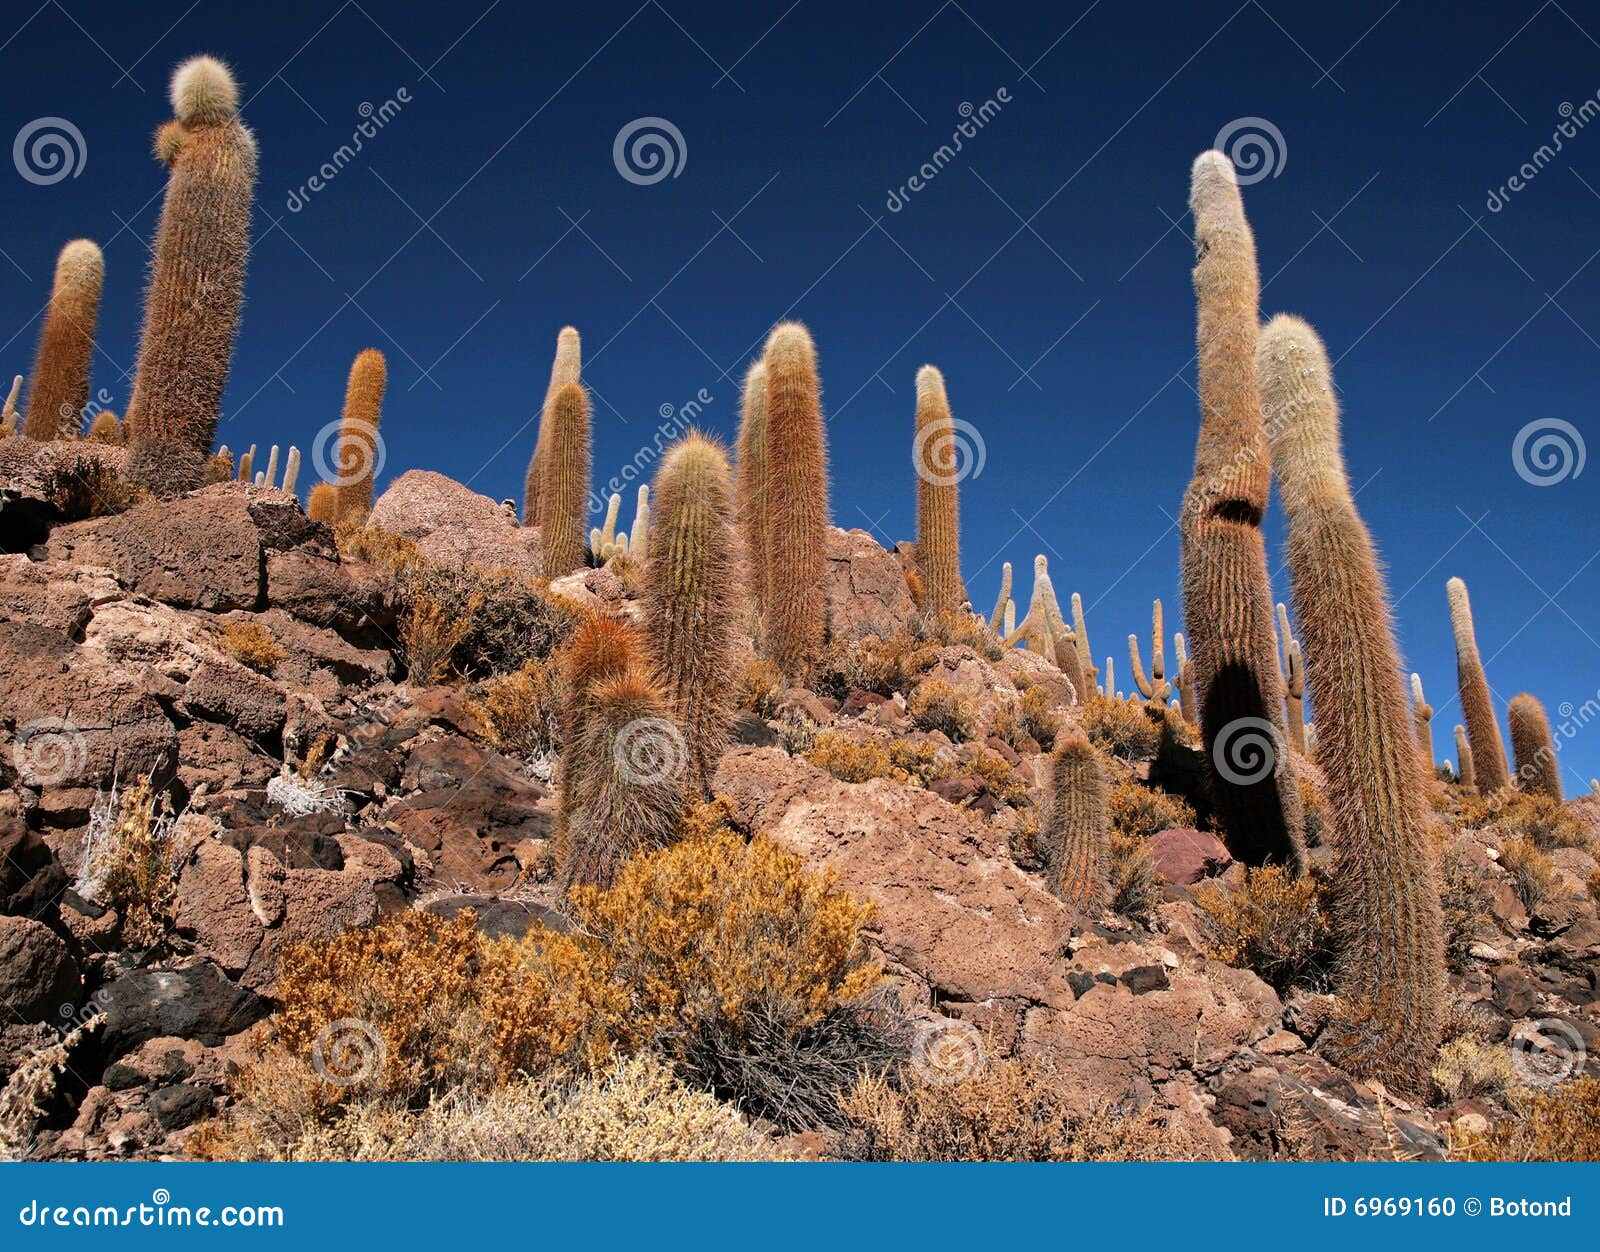 cactus in bolivia in the isla pescado